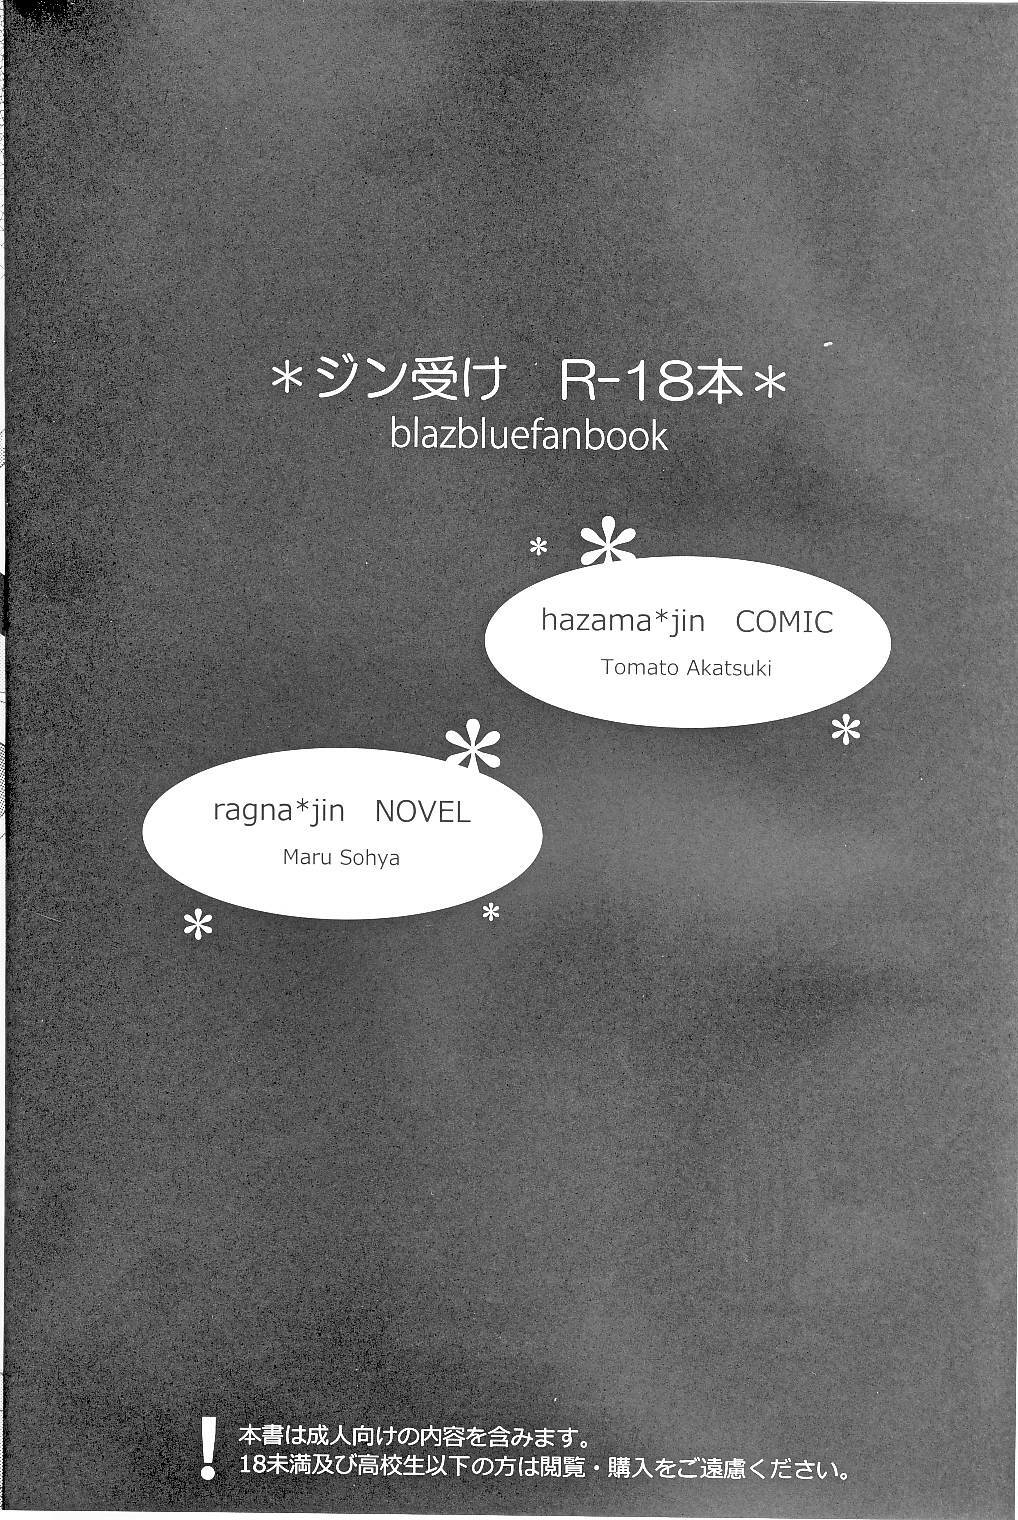 [smat. (Akatsuki Tomato)] Silly (BLAZBLUE) page 3 full